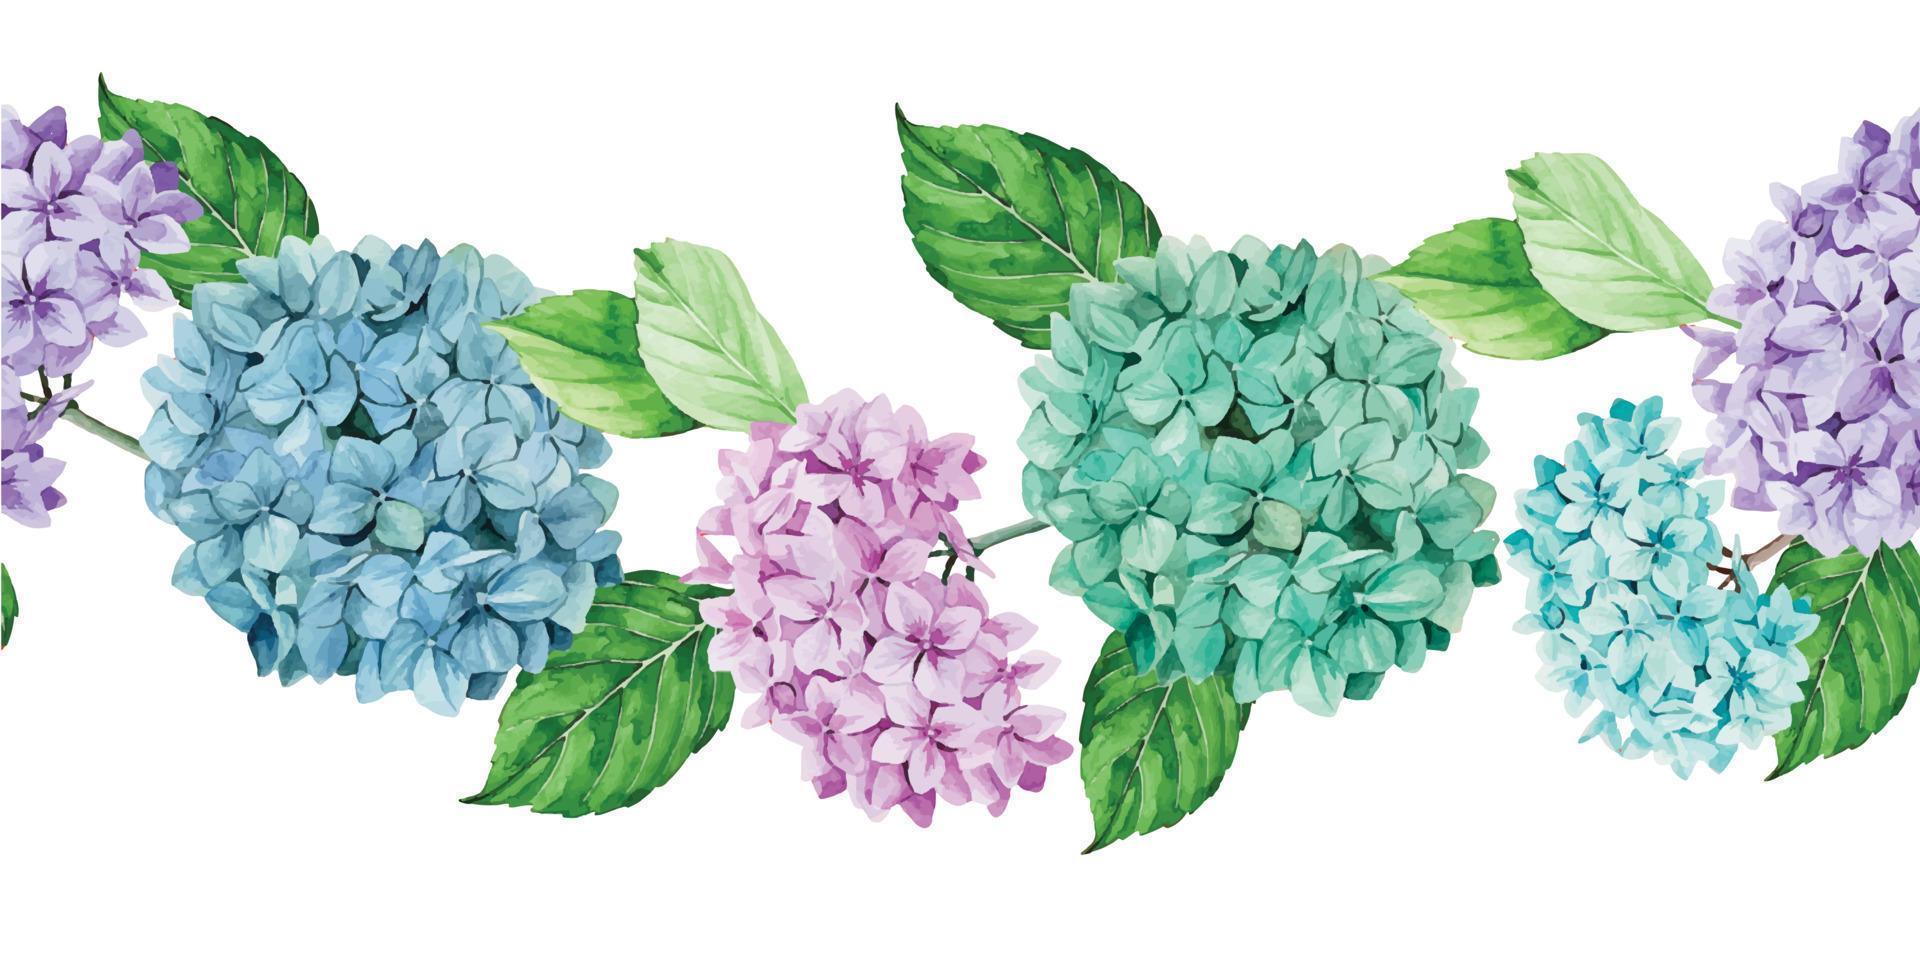 borde transparente de acuarela, marco, pancarta con flores y hojas de hortensia. hojas verdes y flores de hortensias azules, rosas y moradas aisladas en fondo blanco. vector